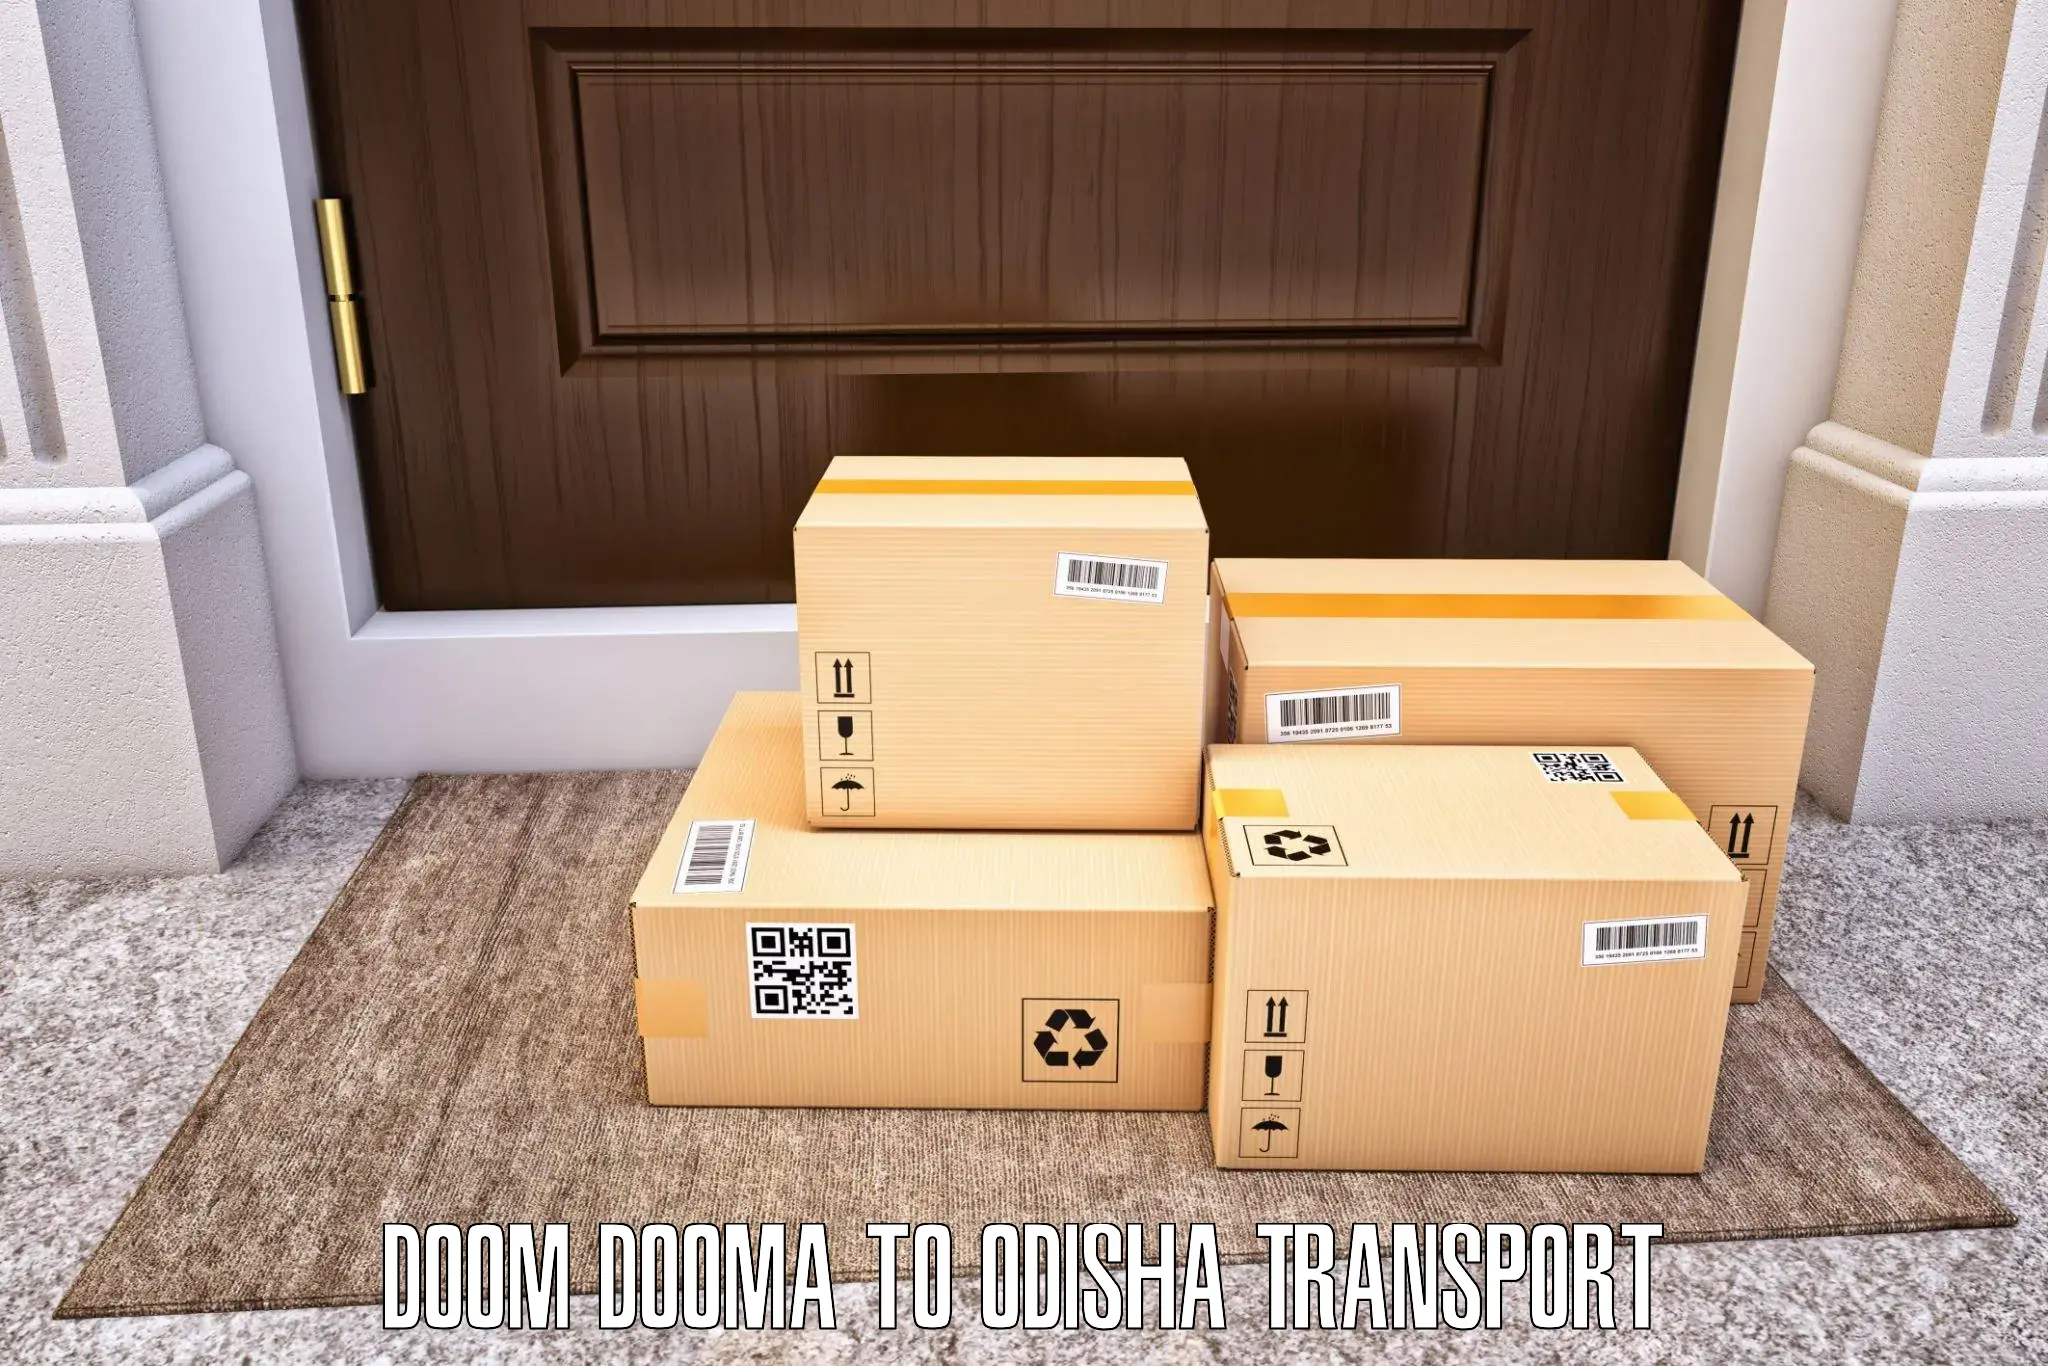 Transport in sharing in Doom Dooma to Tihidi